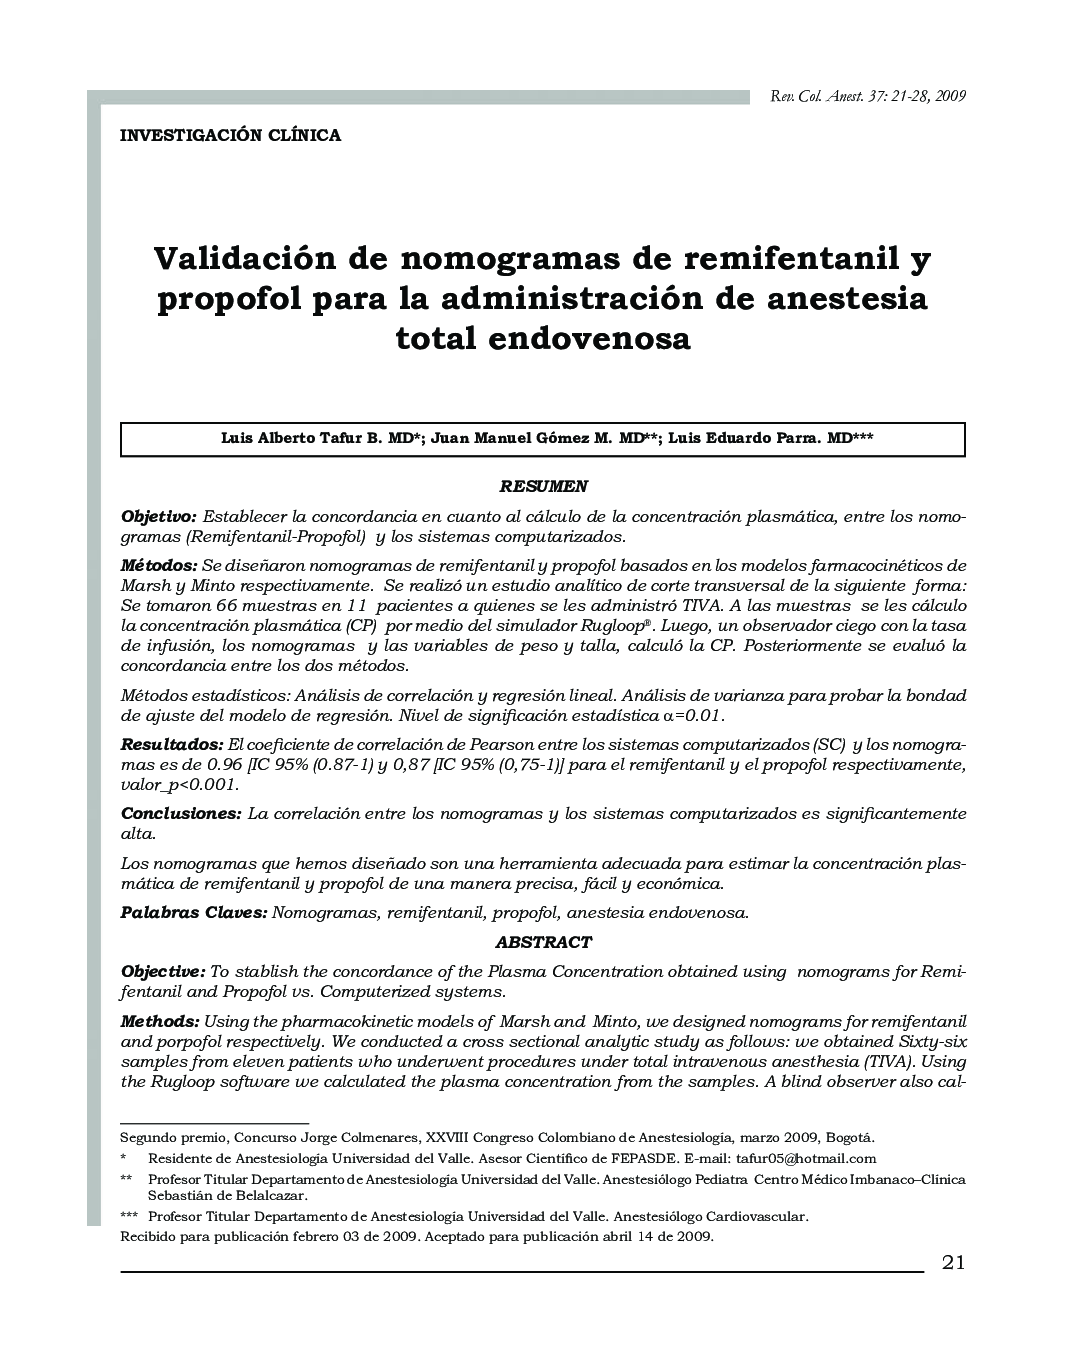 Validación de nomogramas de remifentanil y propofol para la administración de anestesia total endovenosa 